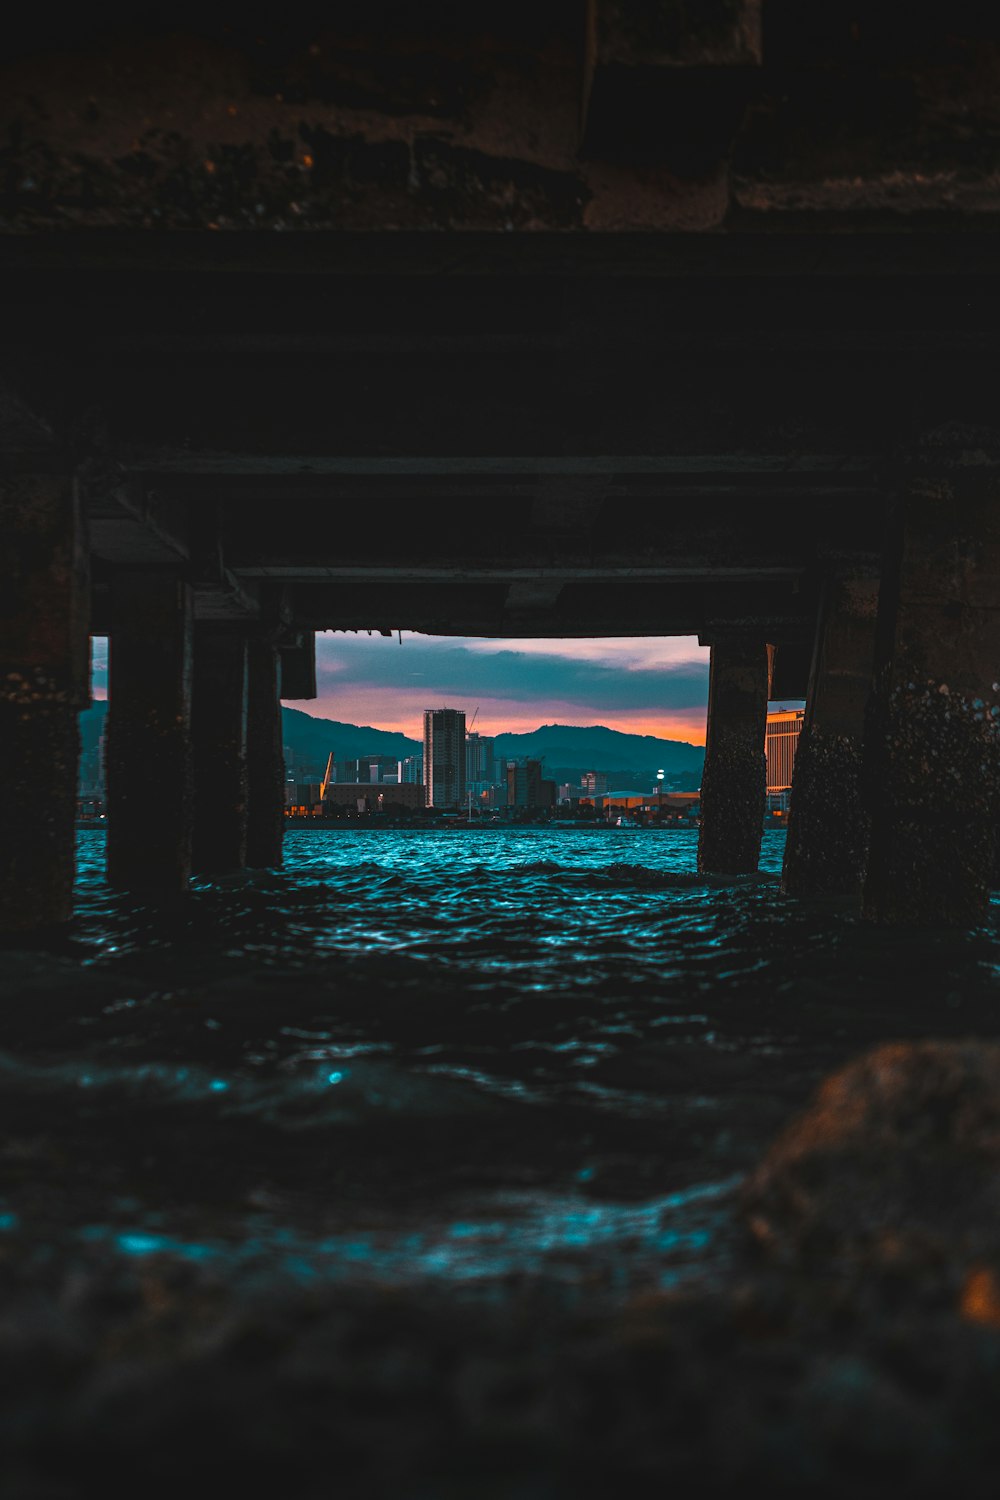 日没時の橋の下の水域